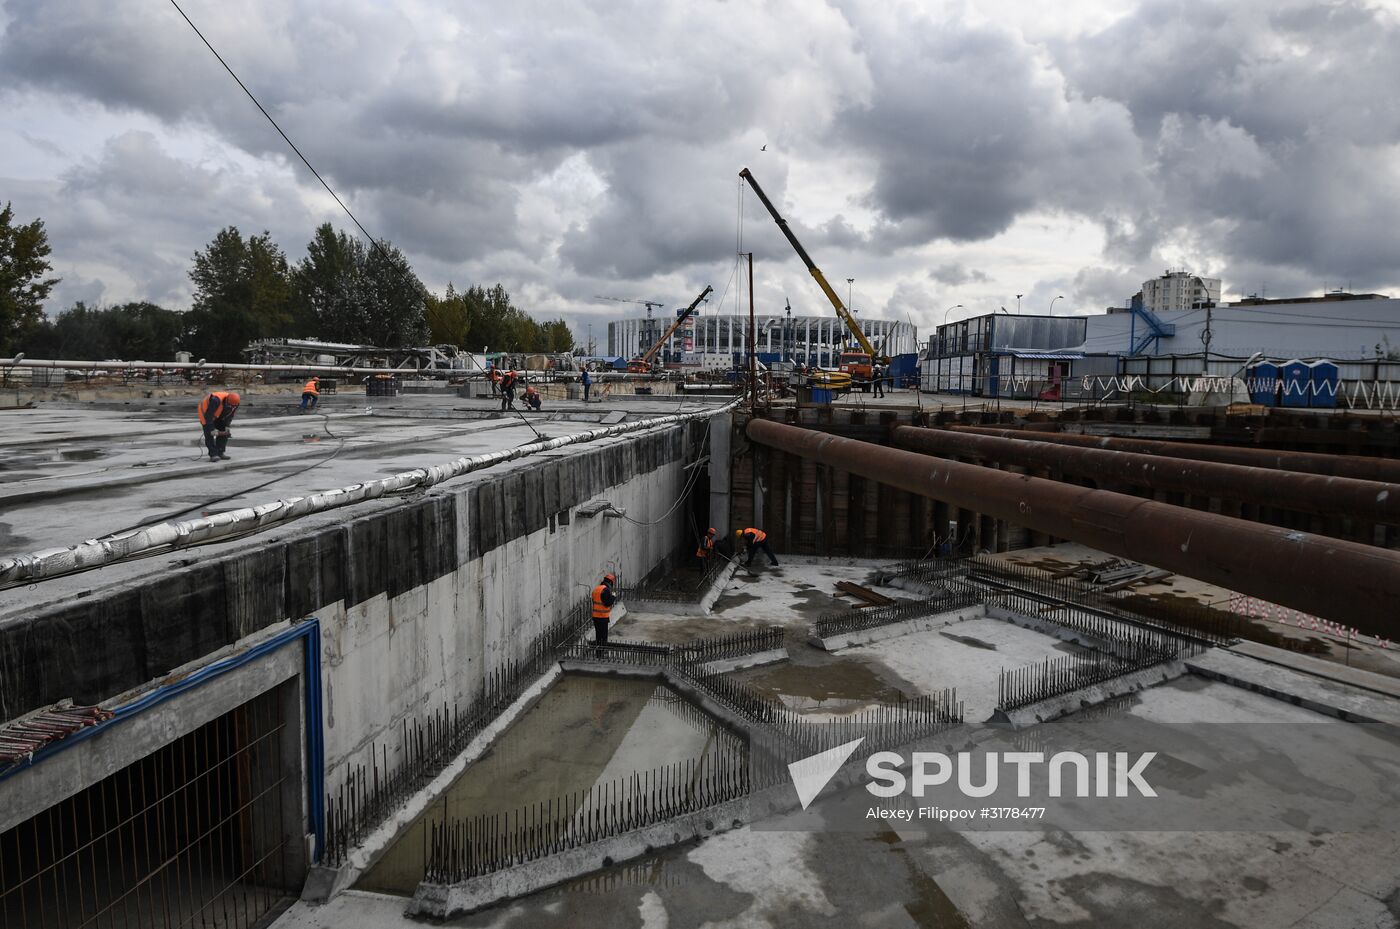 Nizhny Novgorod stadium under construction